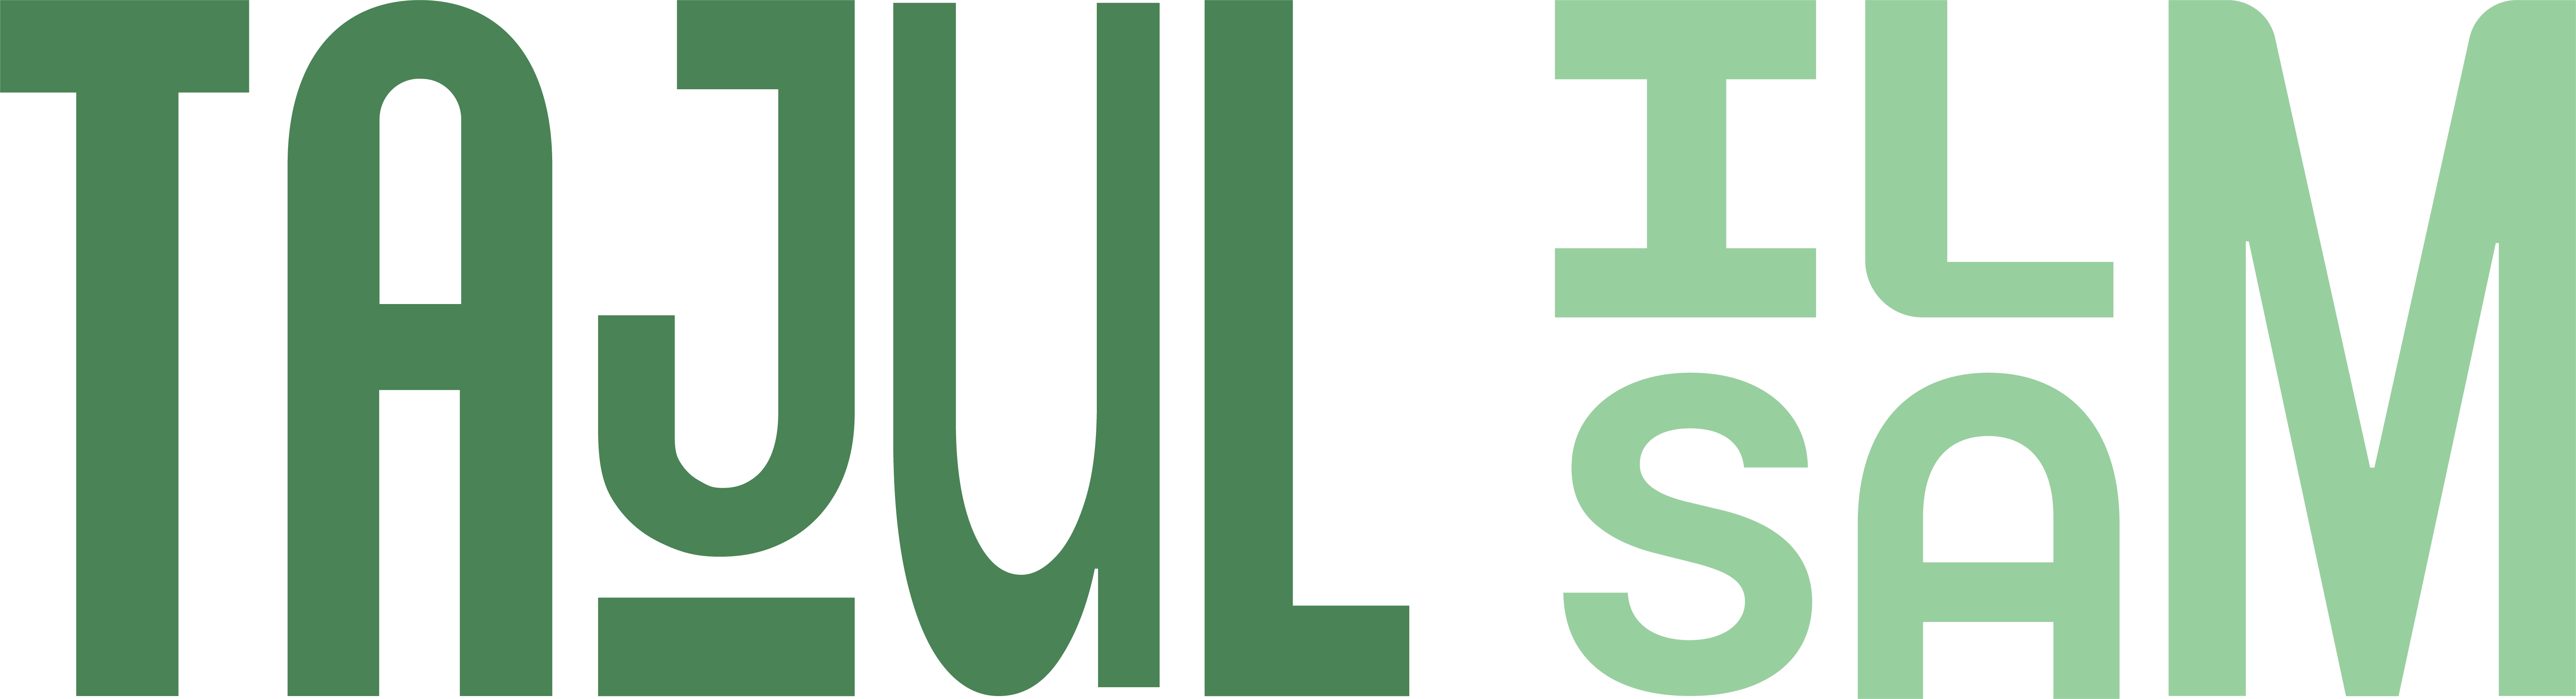 Tajul Islam Logo